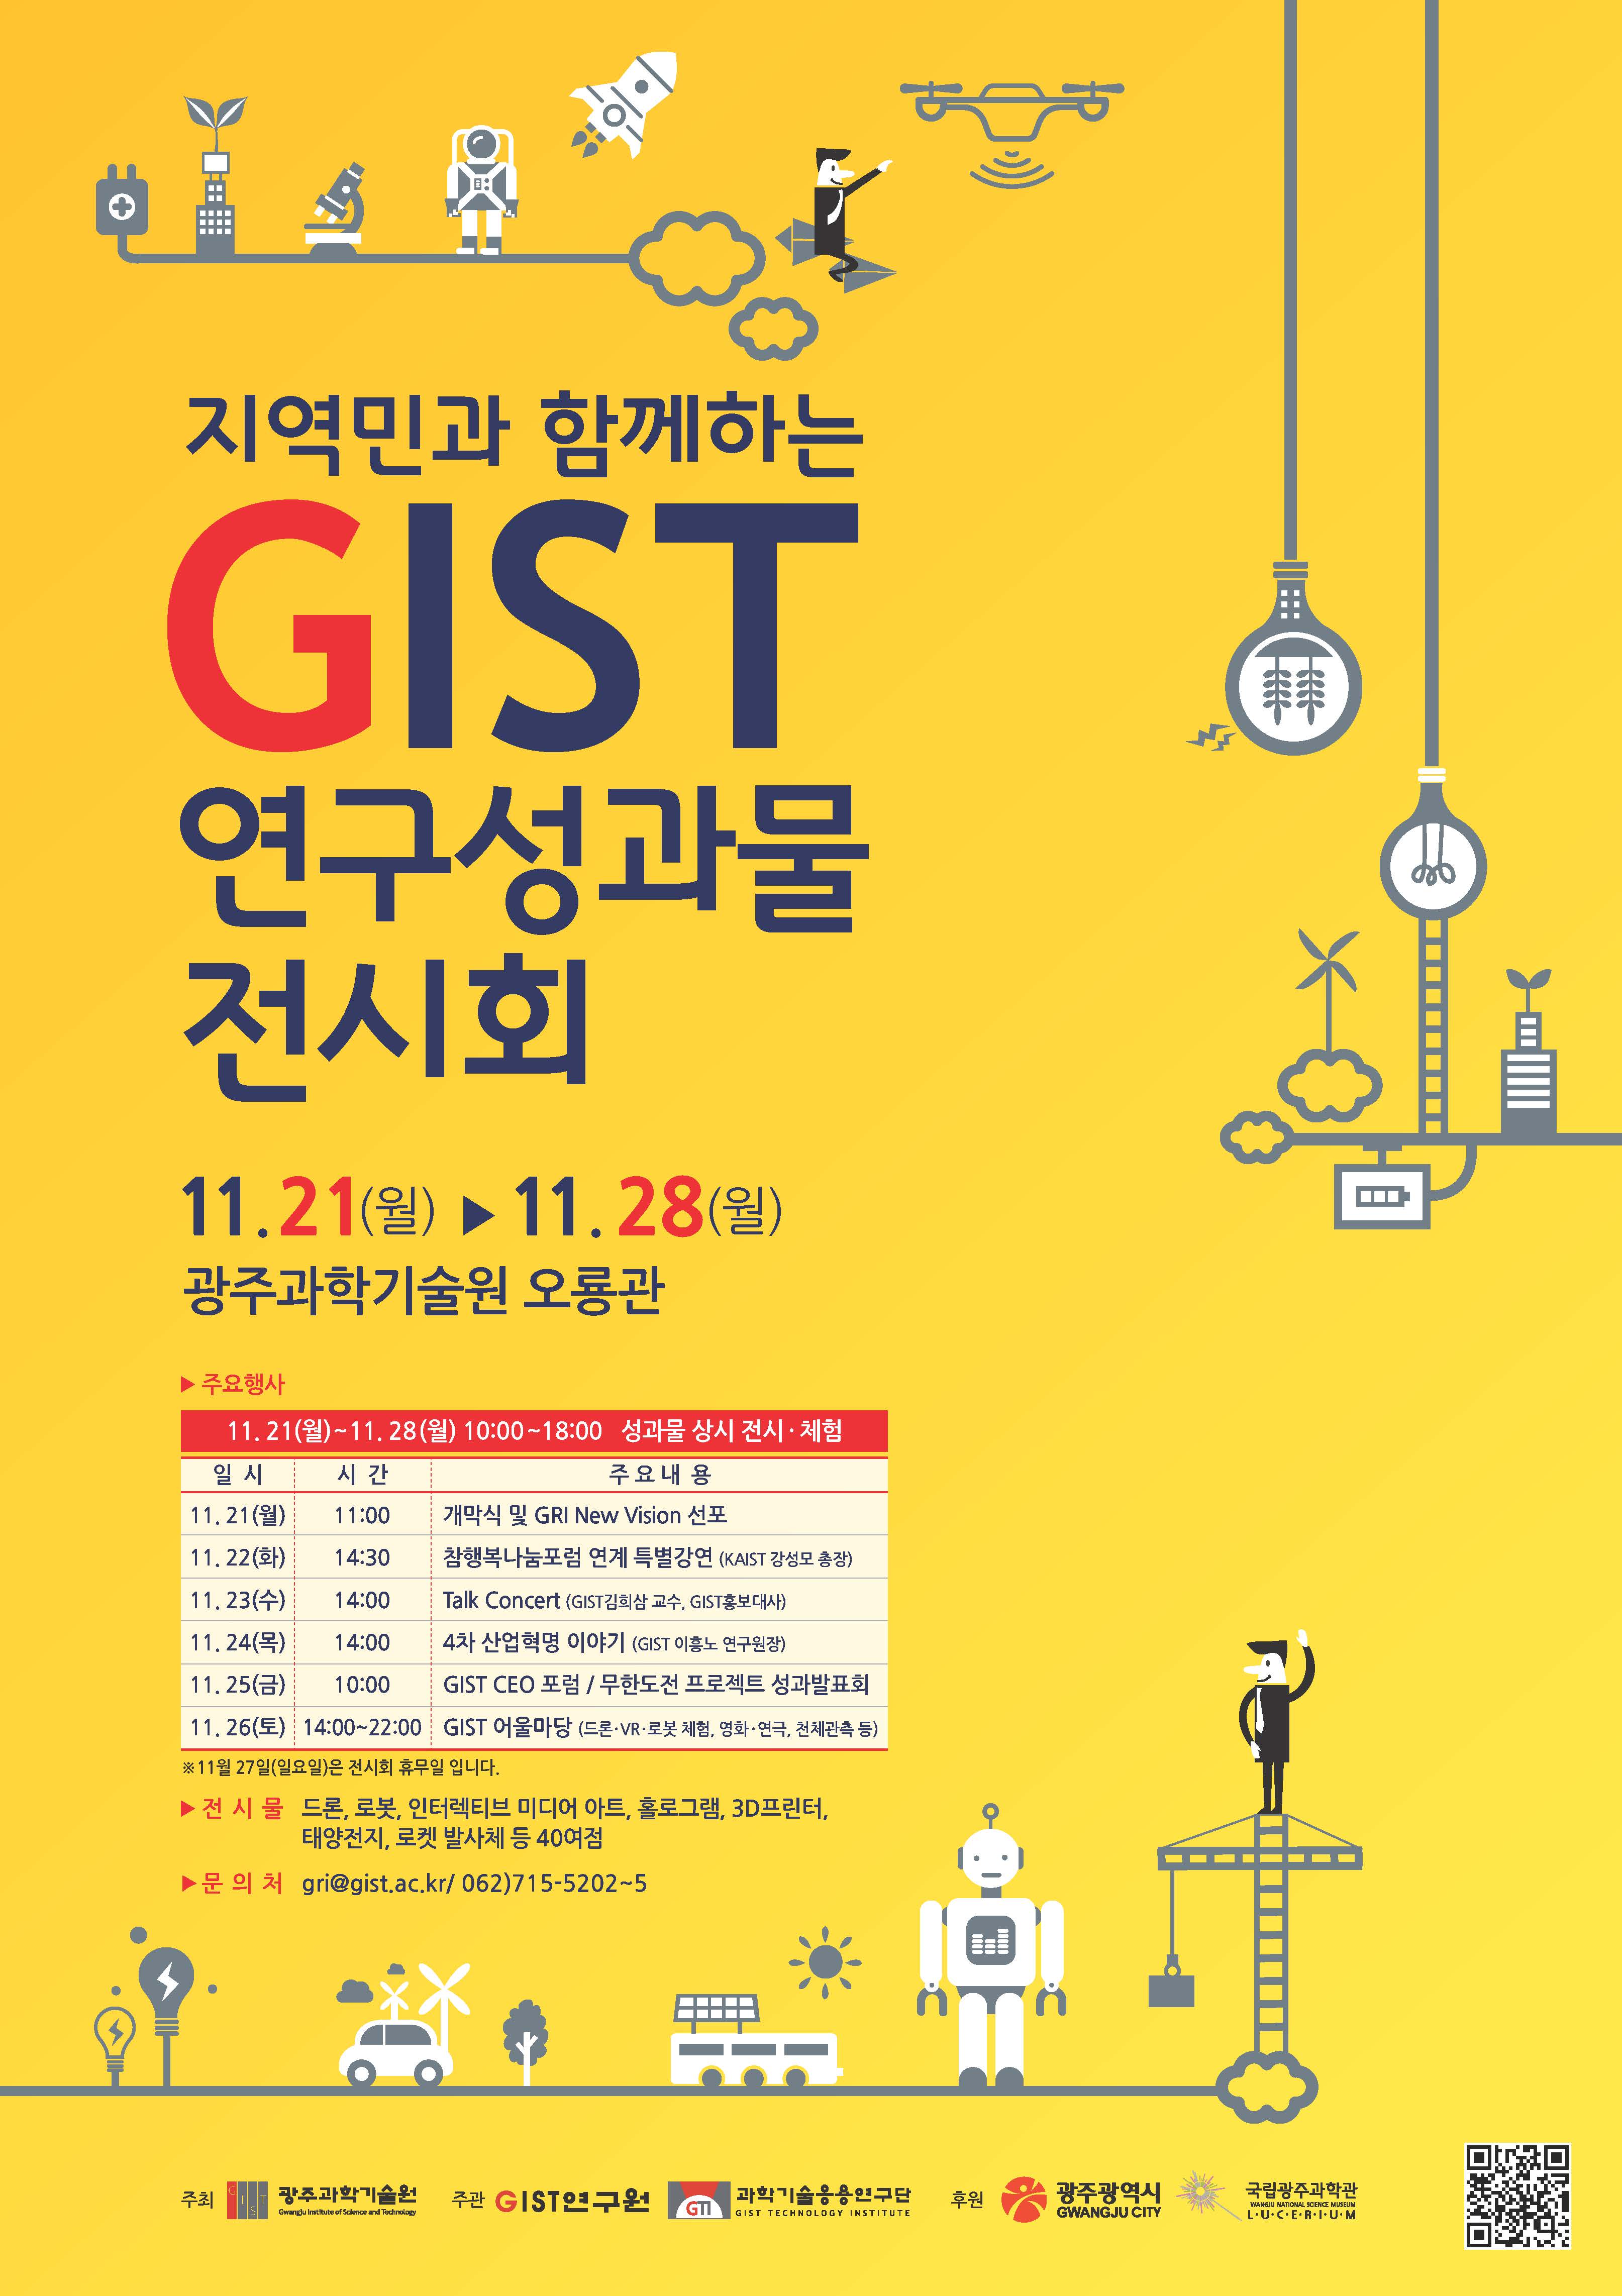 [보도자료] 지역민과 함께 하는 "GIST 연구성과물 전시회" 개최 이미지